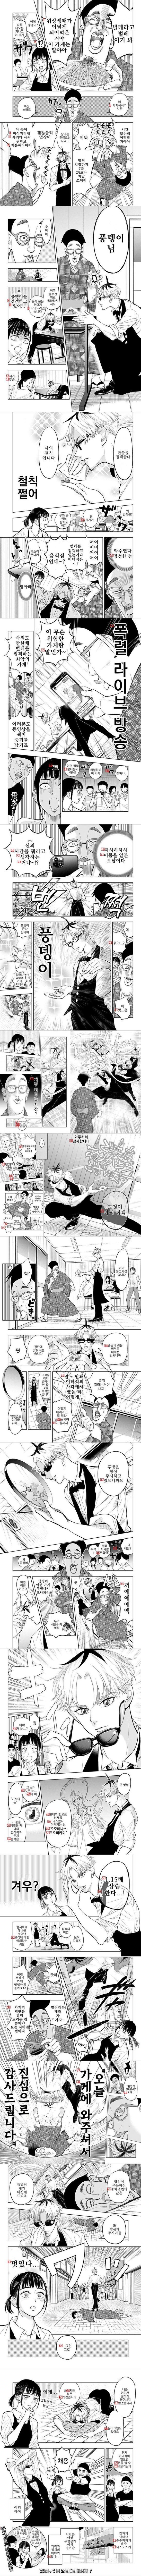 망해가는 중화요리집을 구원하는 감동적인 만화.manga